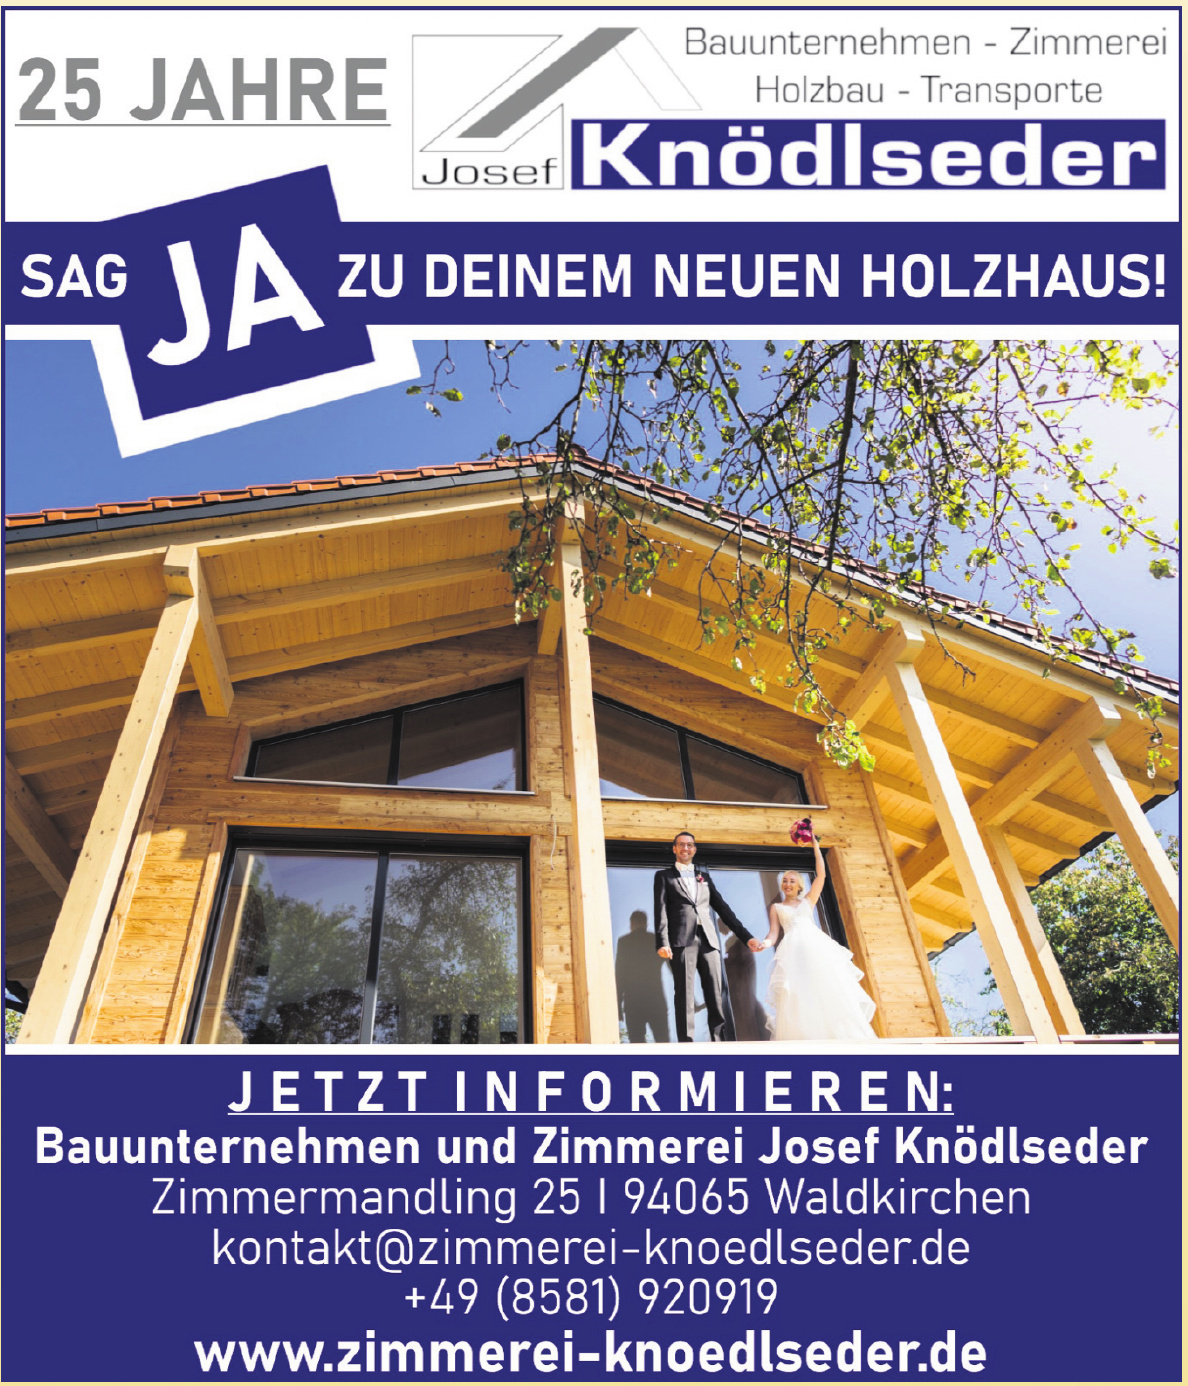 Bauunternehmen und Zimmerei Josef Knödlseder